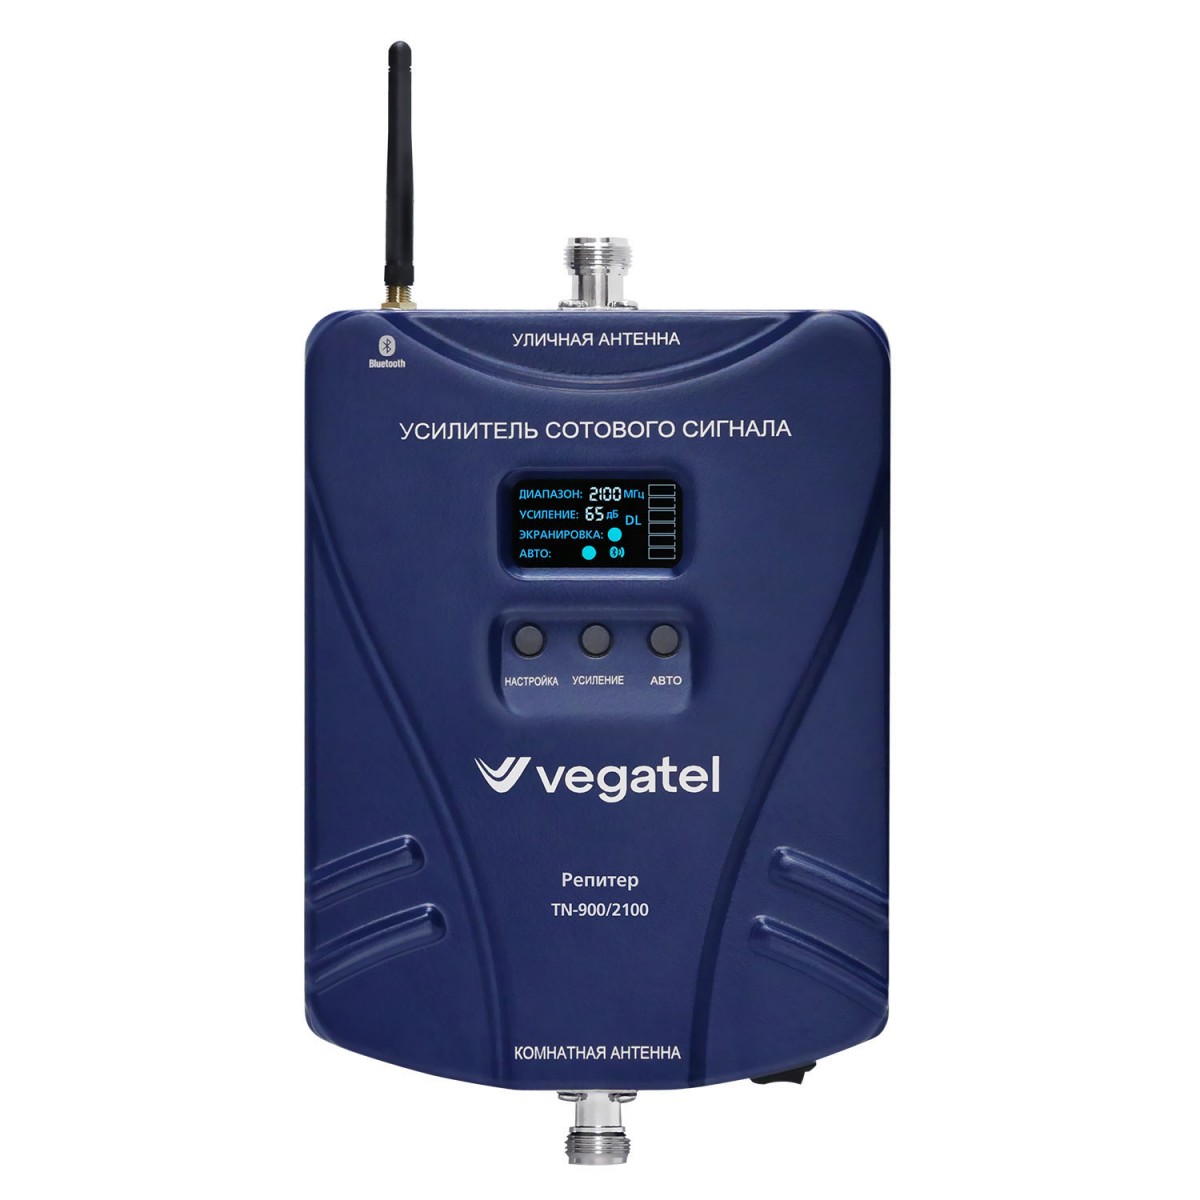 Детальное изображение товара "Комплект усиления сотовой связи Vegatel TN-900/2100" из каталога оборудования Антенна76